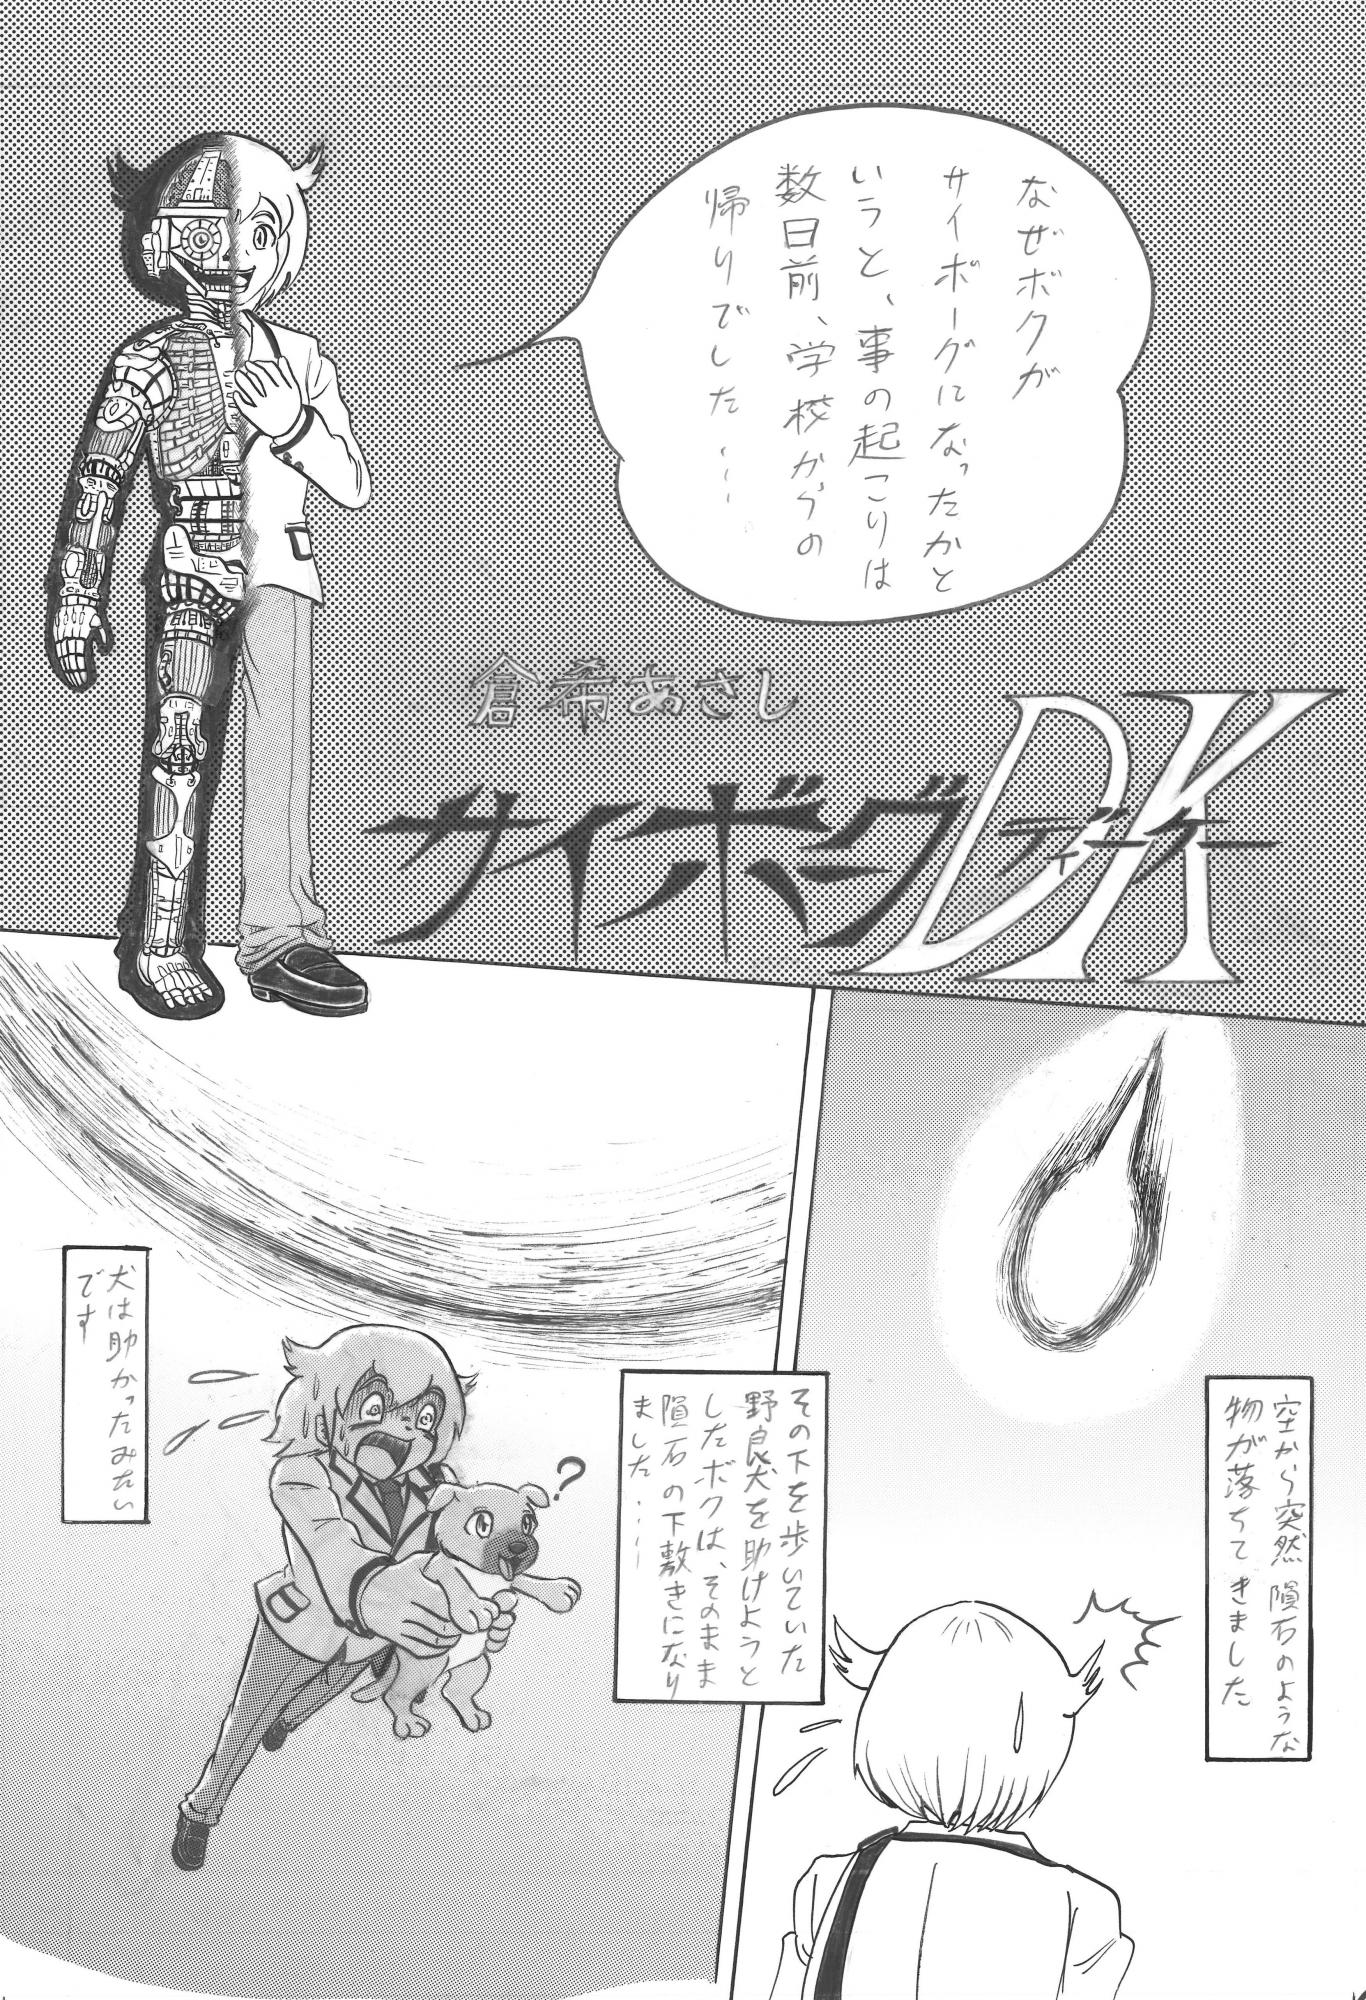 第16回のらくろマンガ賞ストーリー漫画の部・一般大賞「サイボーグＤＫ」倉希あさしさんの作品